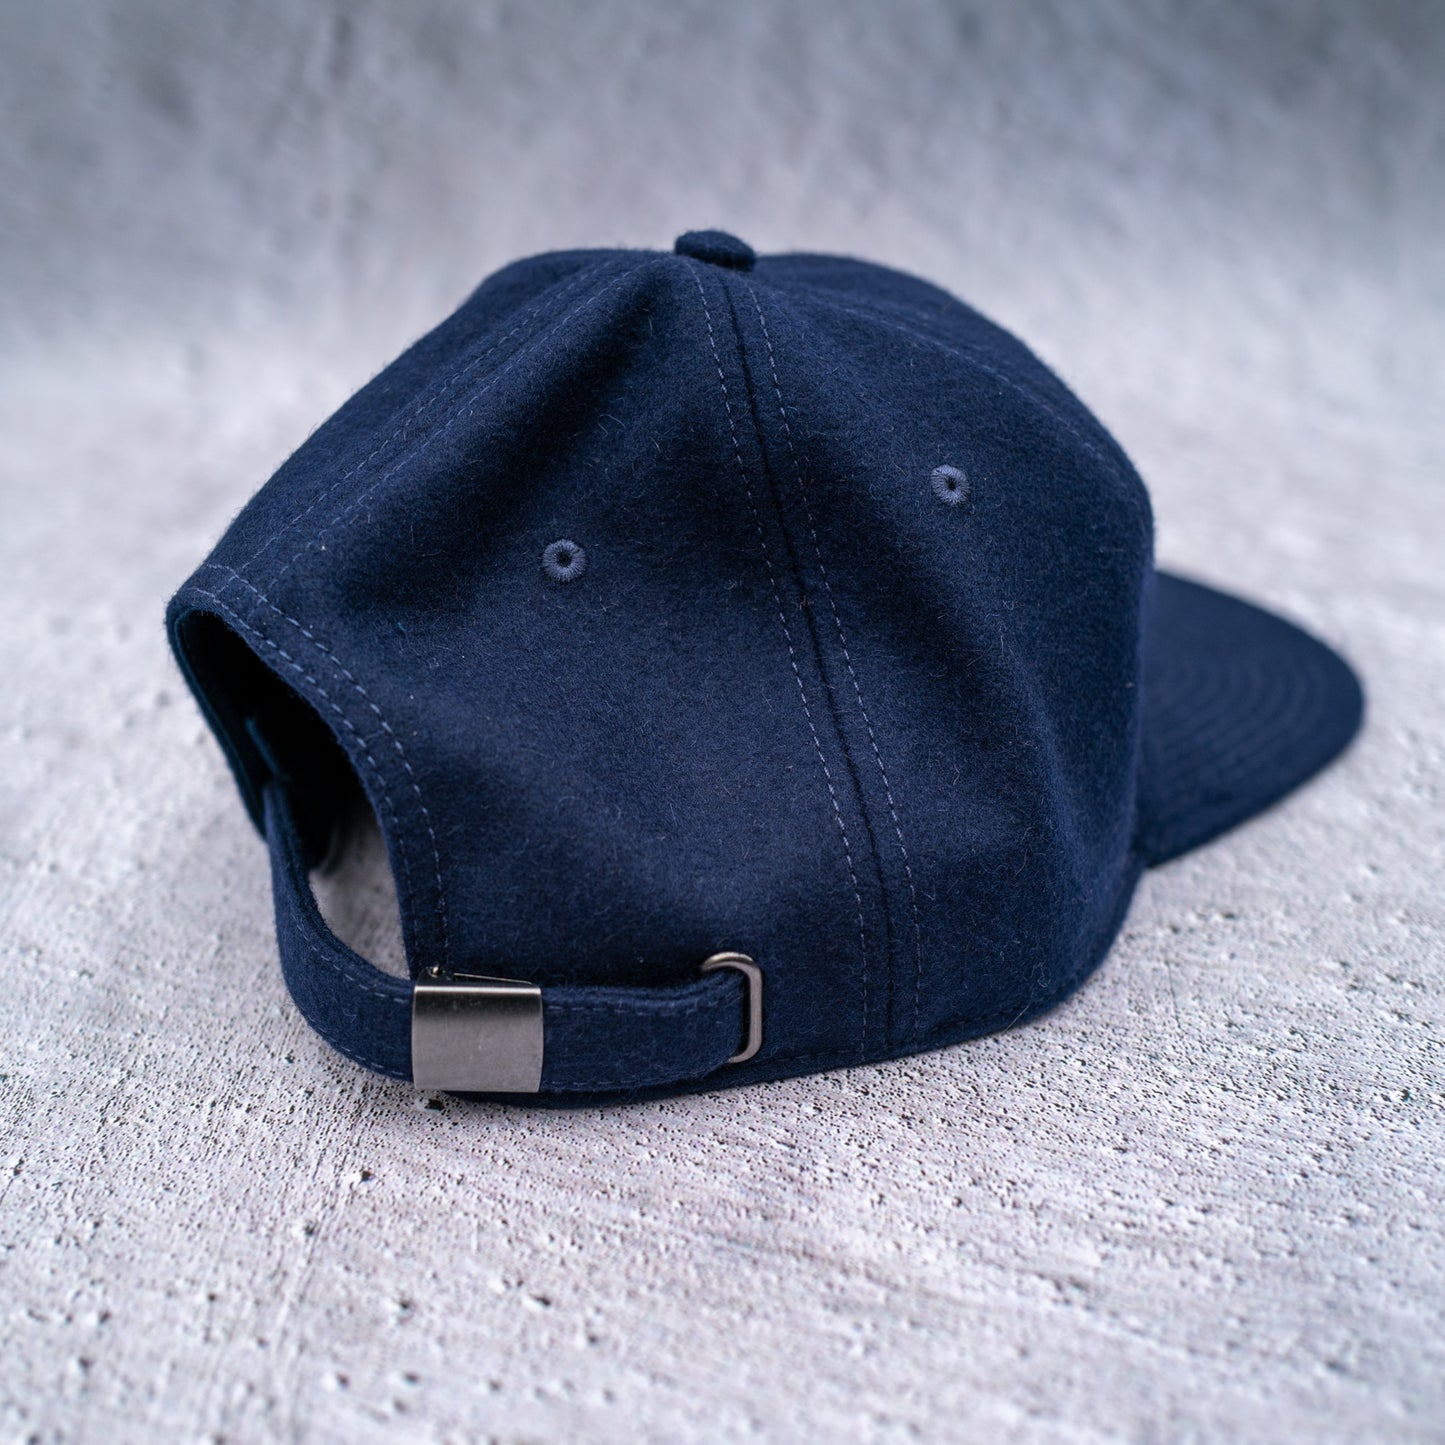 The Vintage Cap